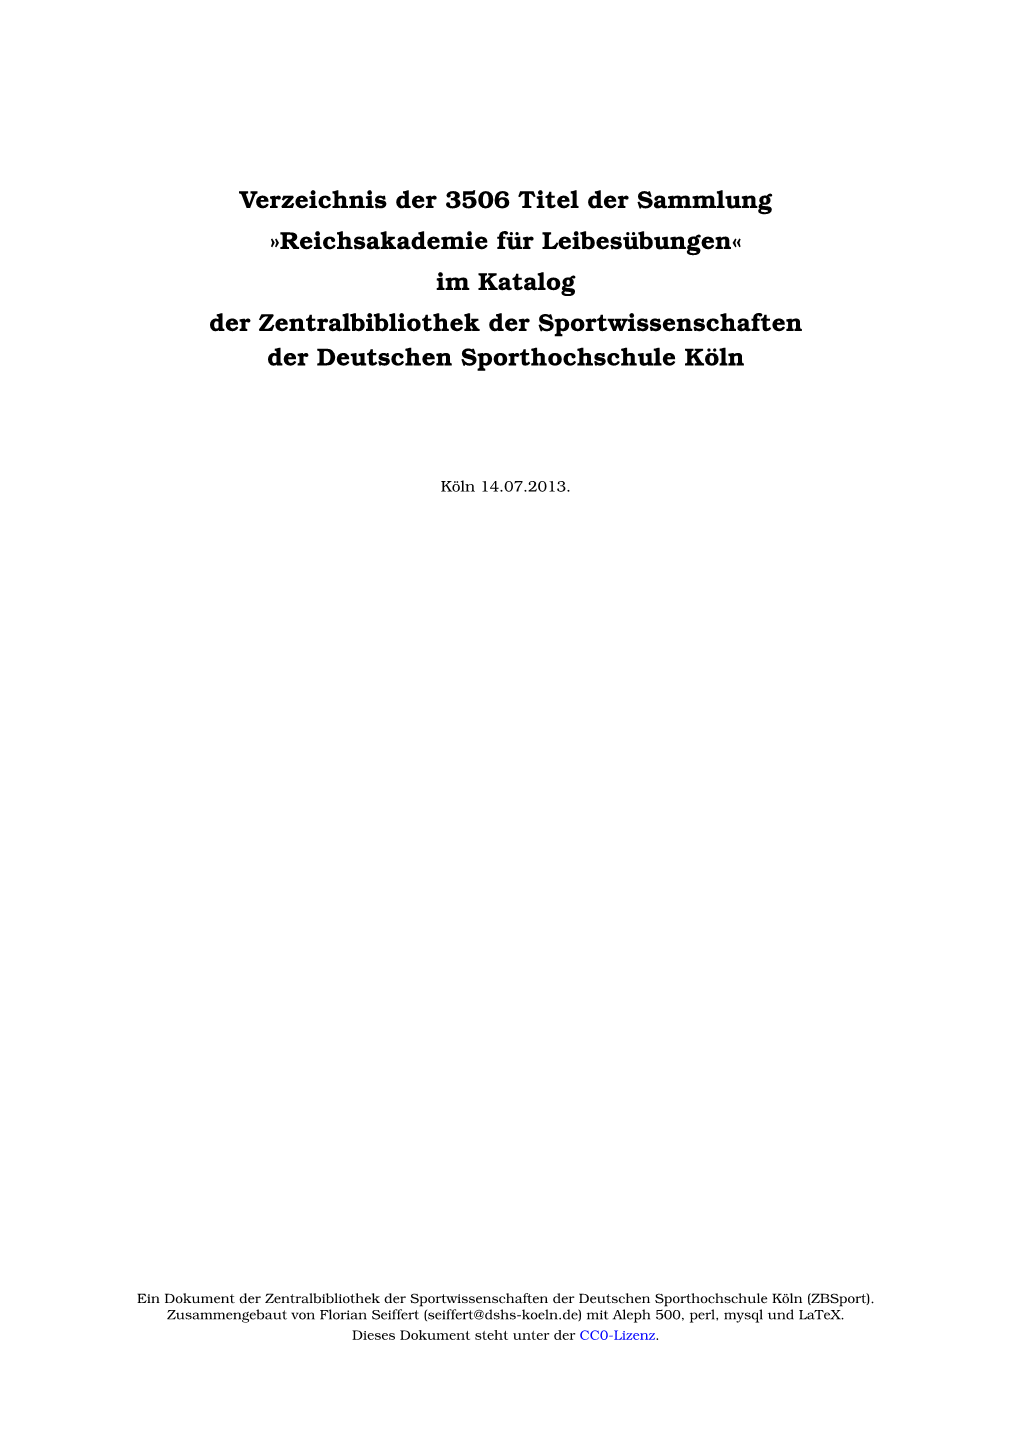 Reichsakademie Für Leibesübungen« Im Katalog Der Zentralbibliothek Der Sportwissenschaften Der Deutschen Sporthochschule Köln